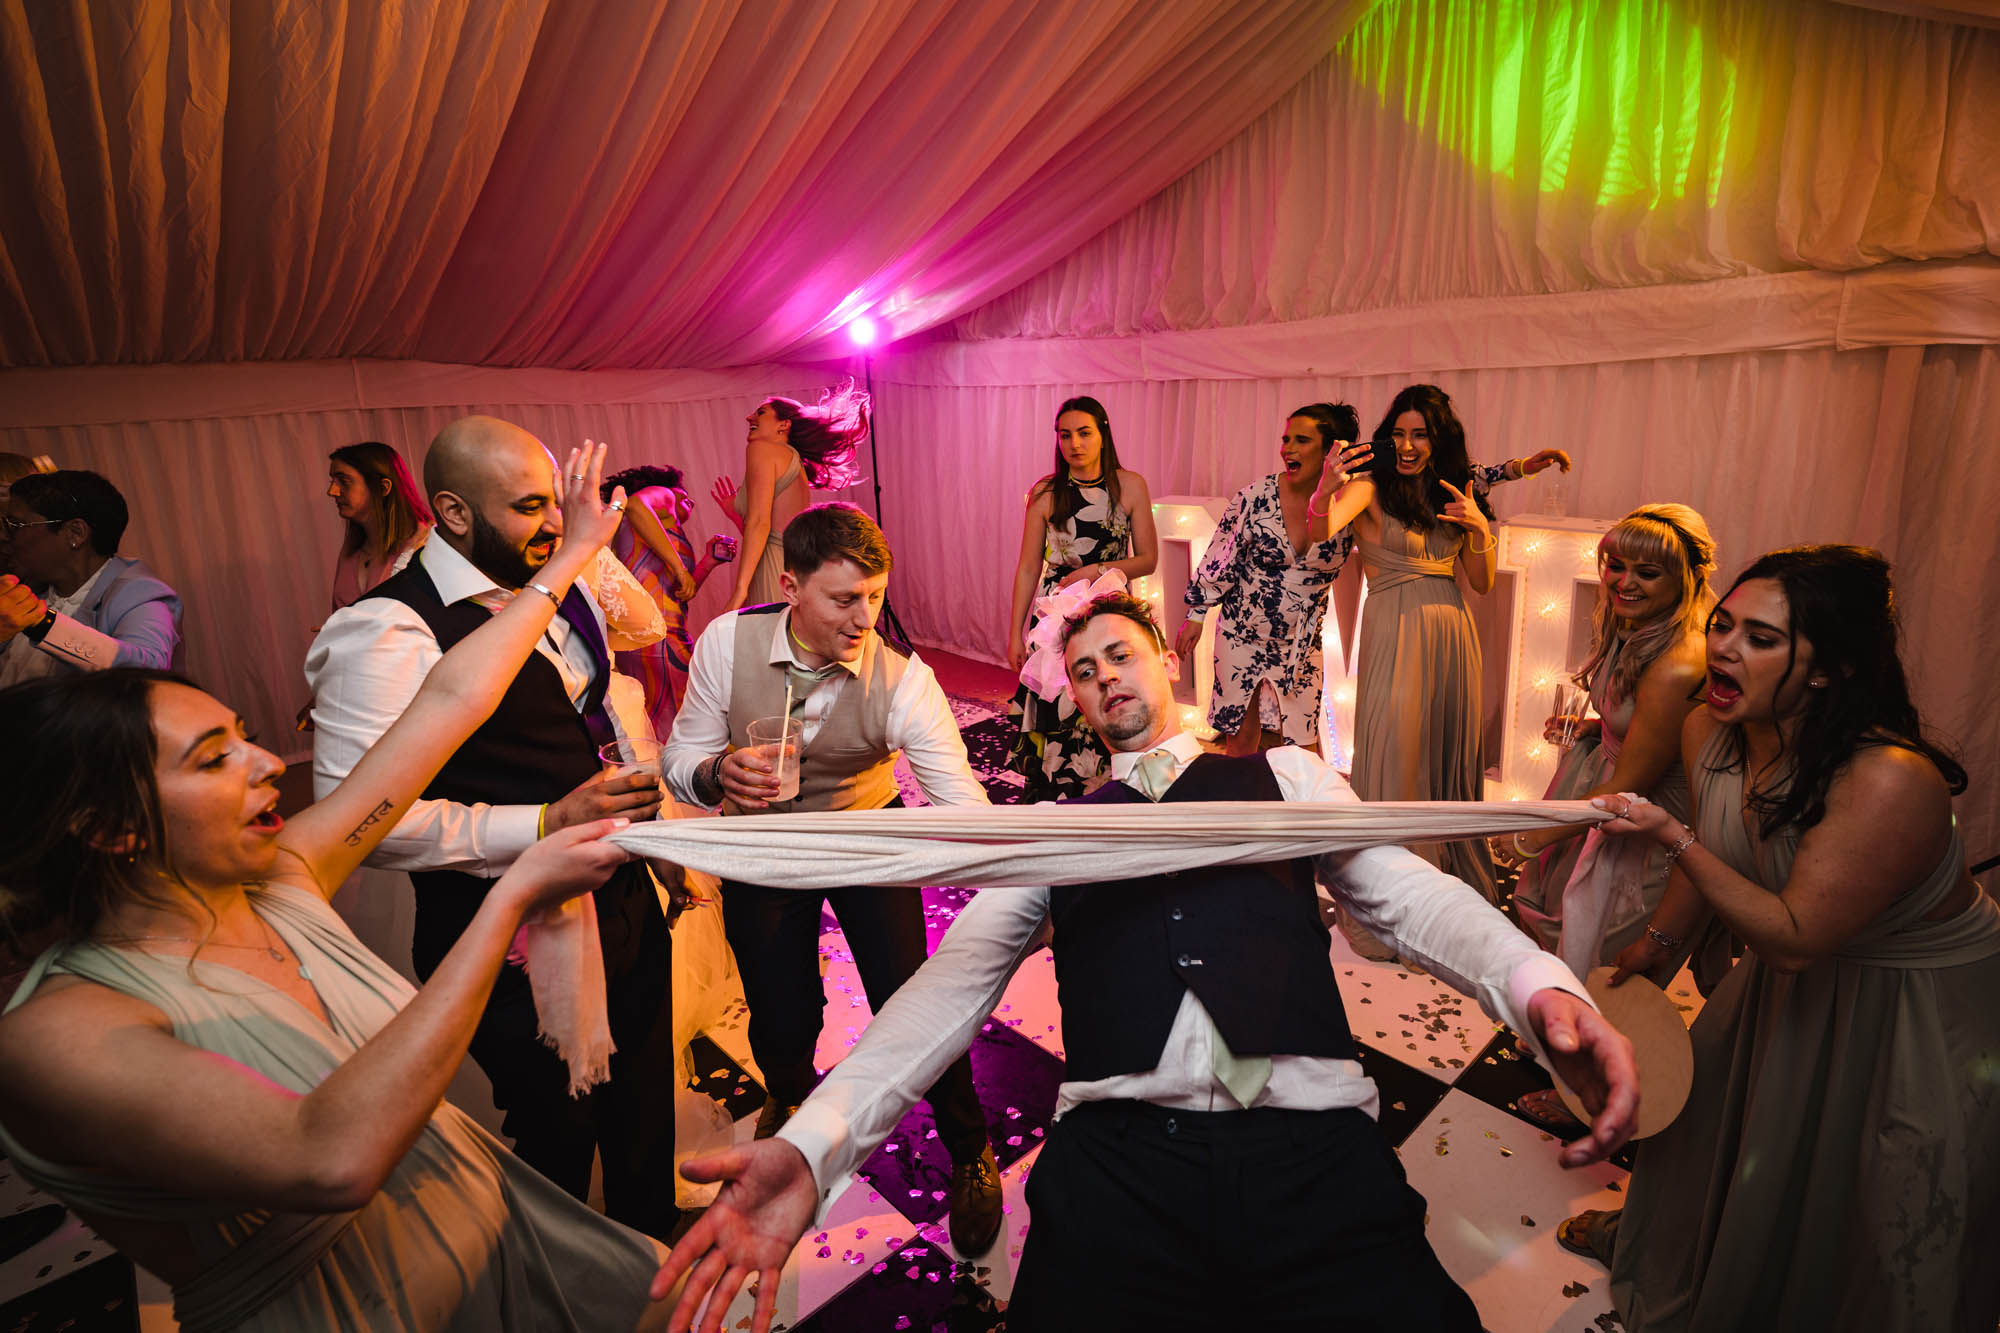 Wedding dancefloor photo with a guy doing limbo